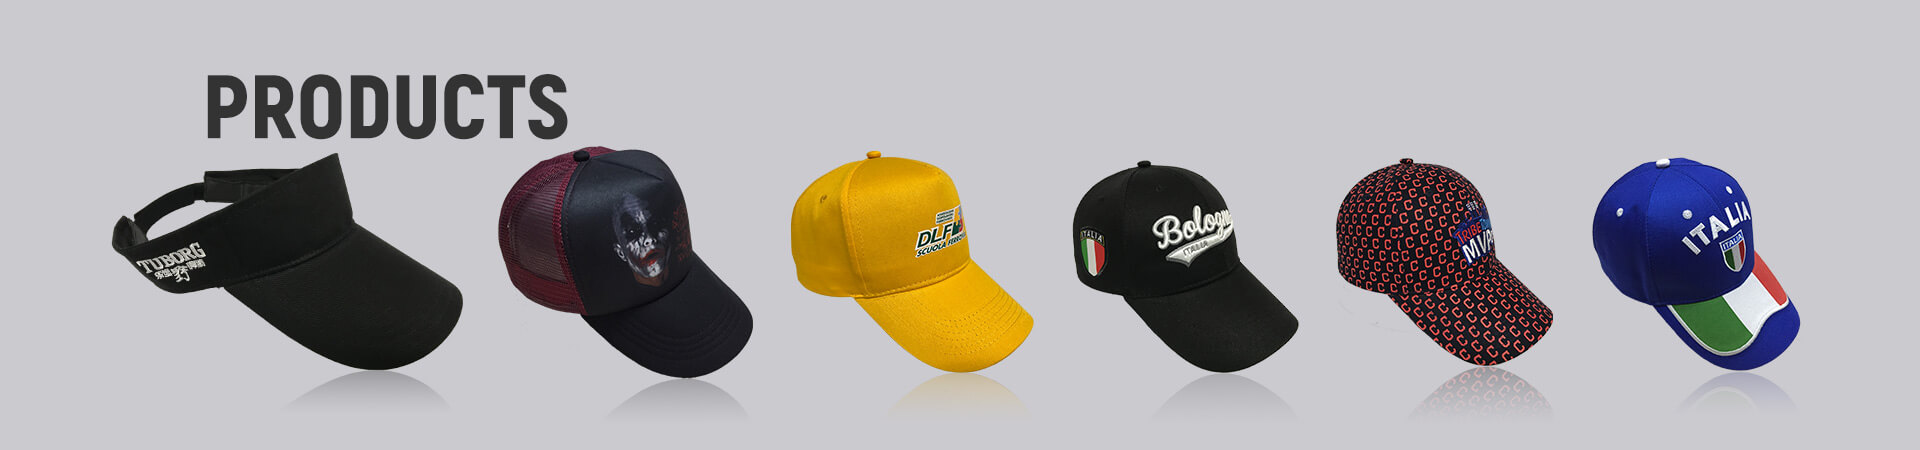 Parasol Archives - Gorra de béisbol, gorra deportiva, gorra de golf, gorra de pescador, gorra de camionero